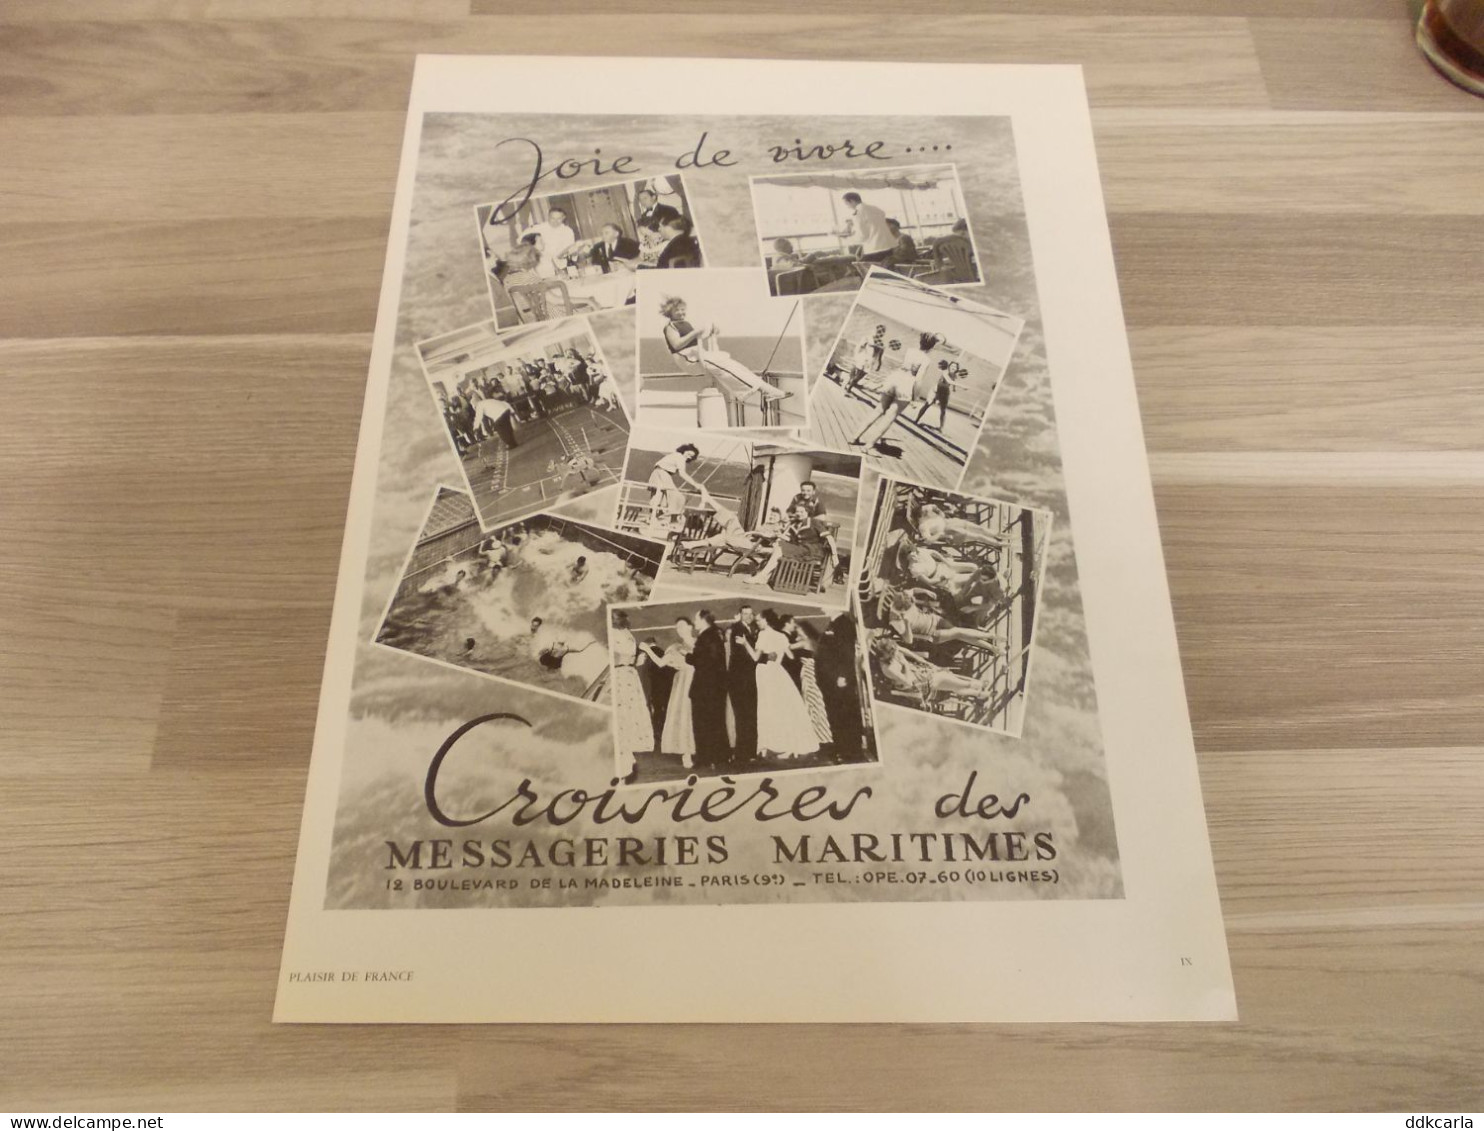 Reclame Advertentie Uit Oud Tijdschrift 1952 - Joie De Vivre Croisières Des Messageries Maritimes - Publicidad